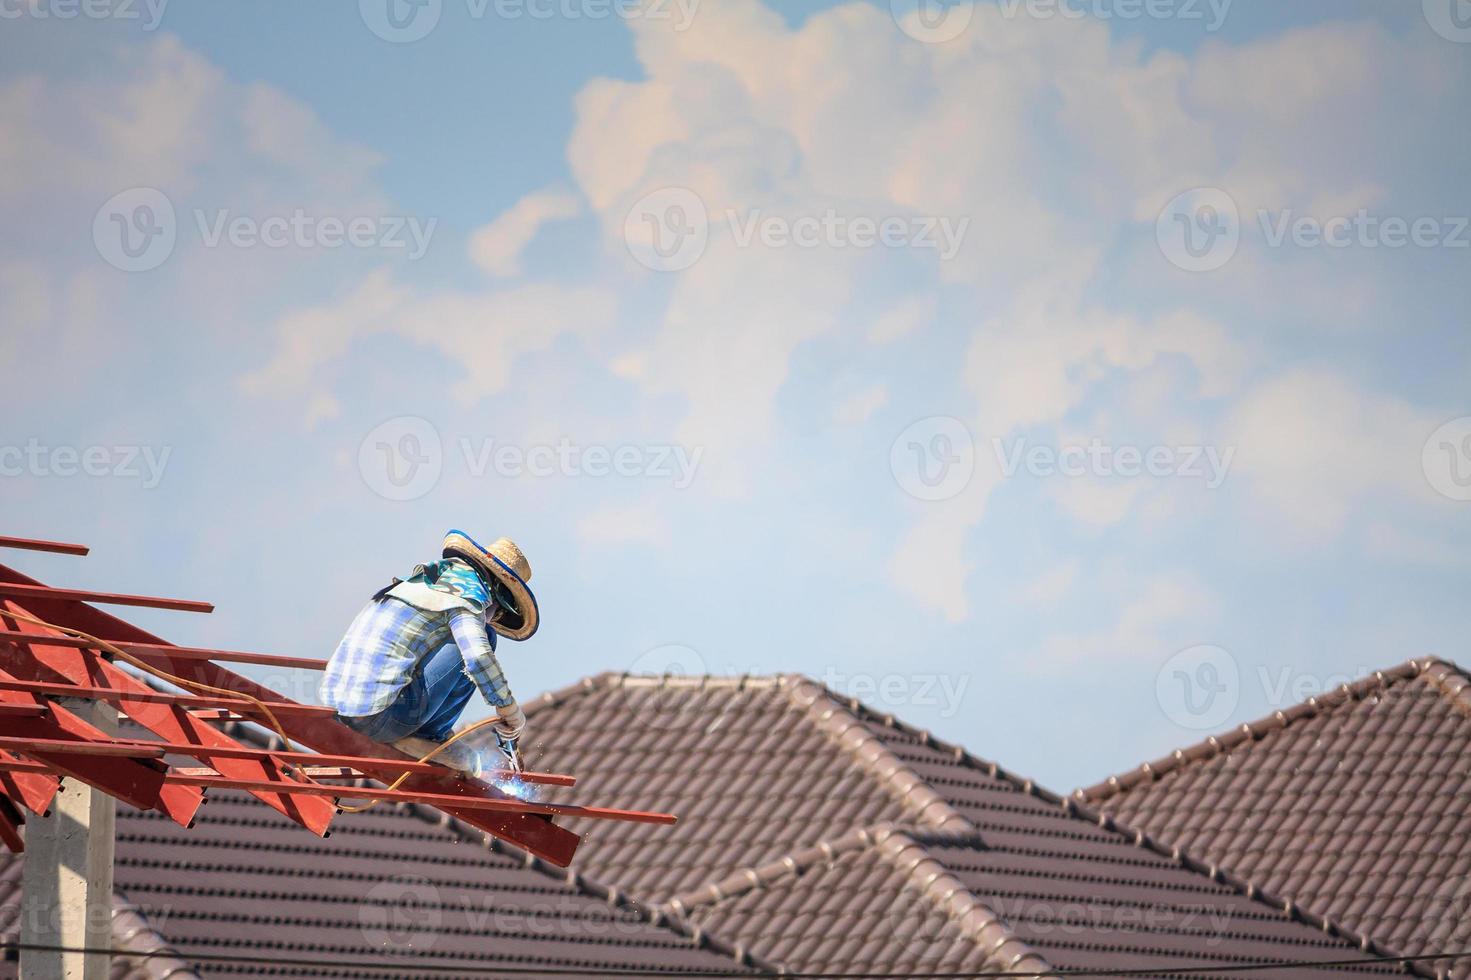 trabajadores soldadores que instalan la estructura de acero del techo de la casa en el sitio de construcción foto